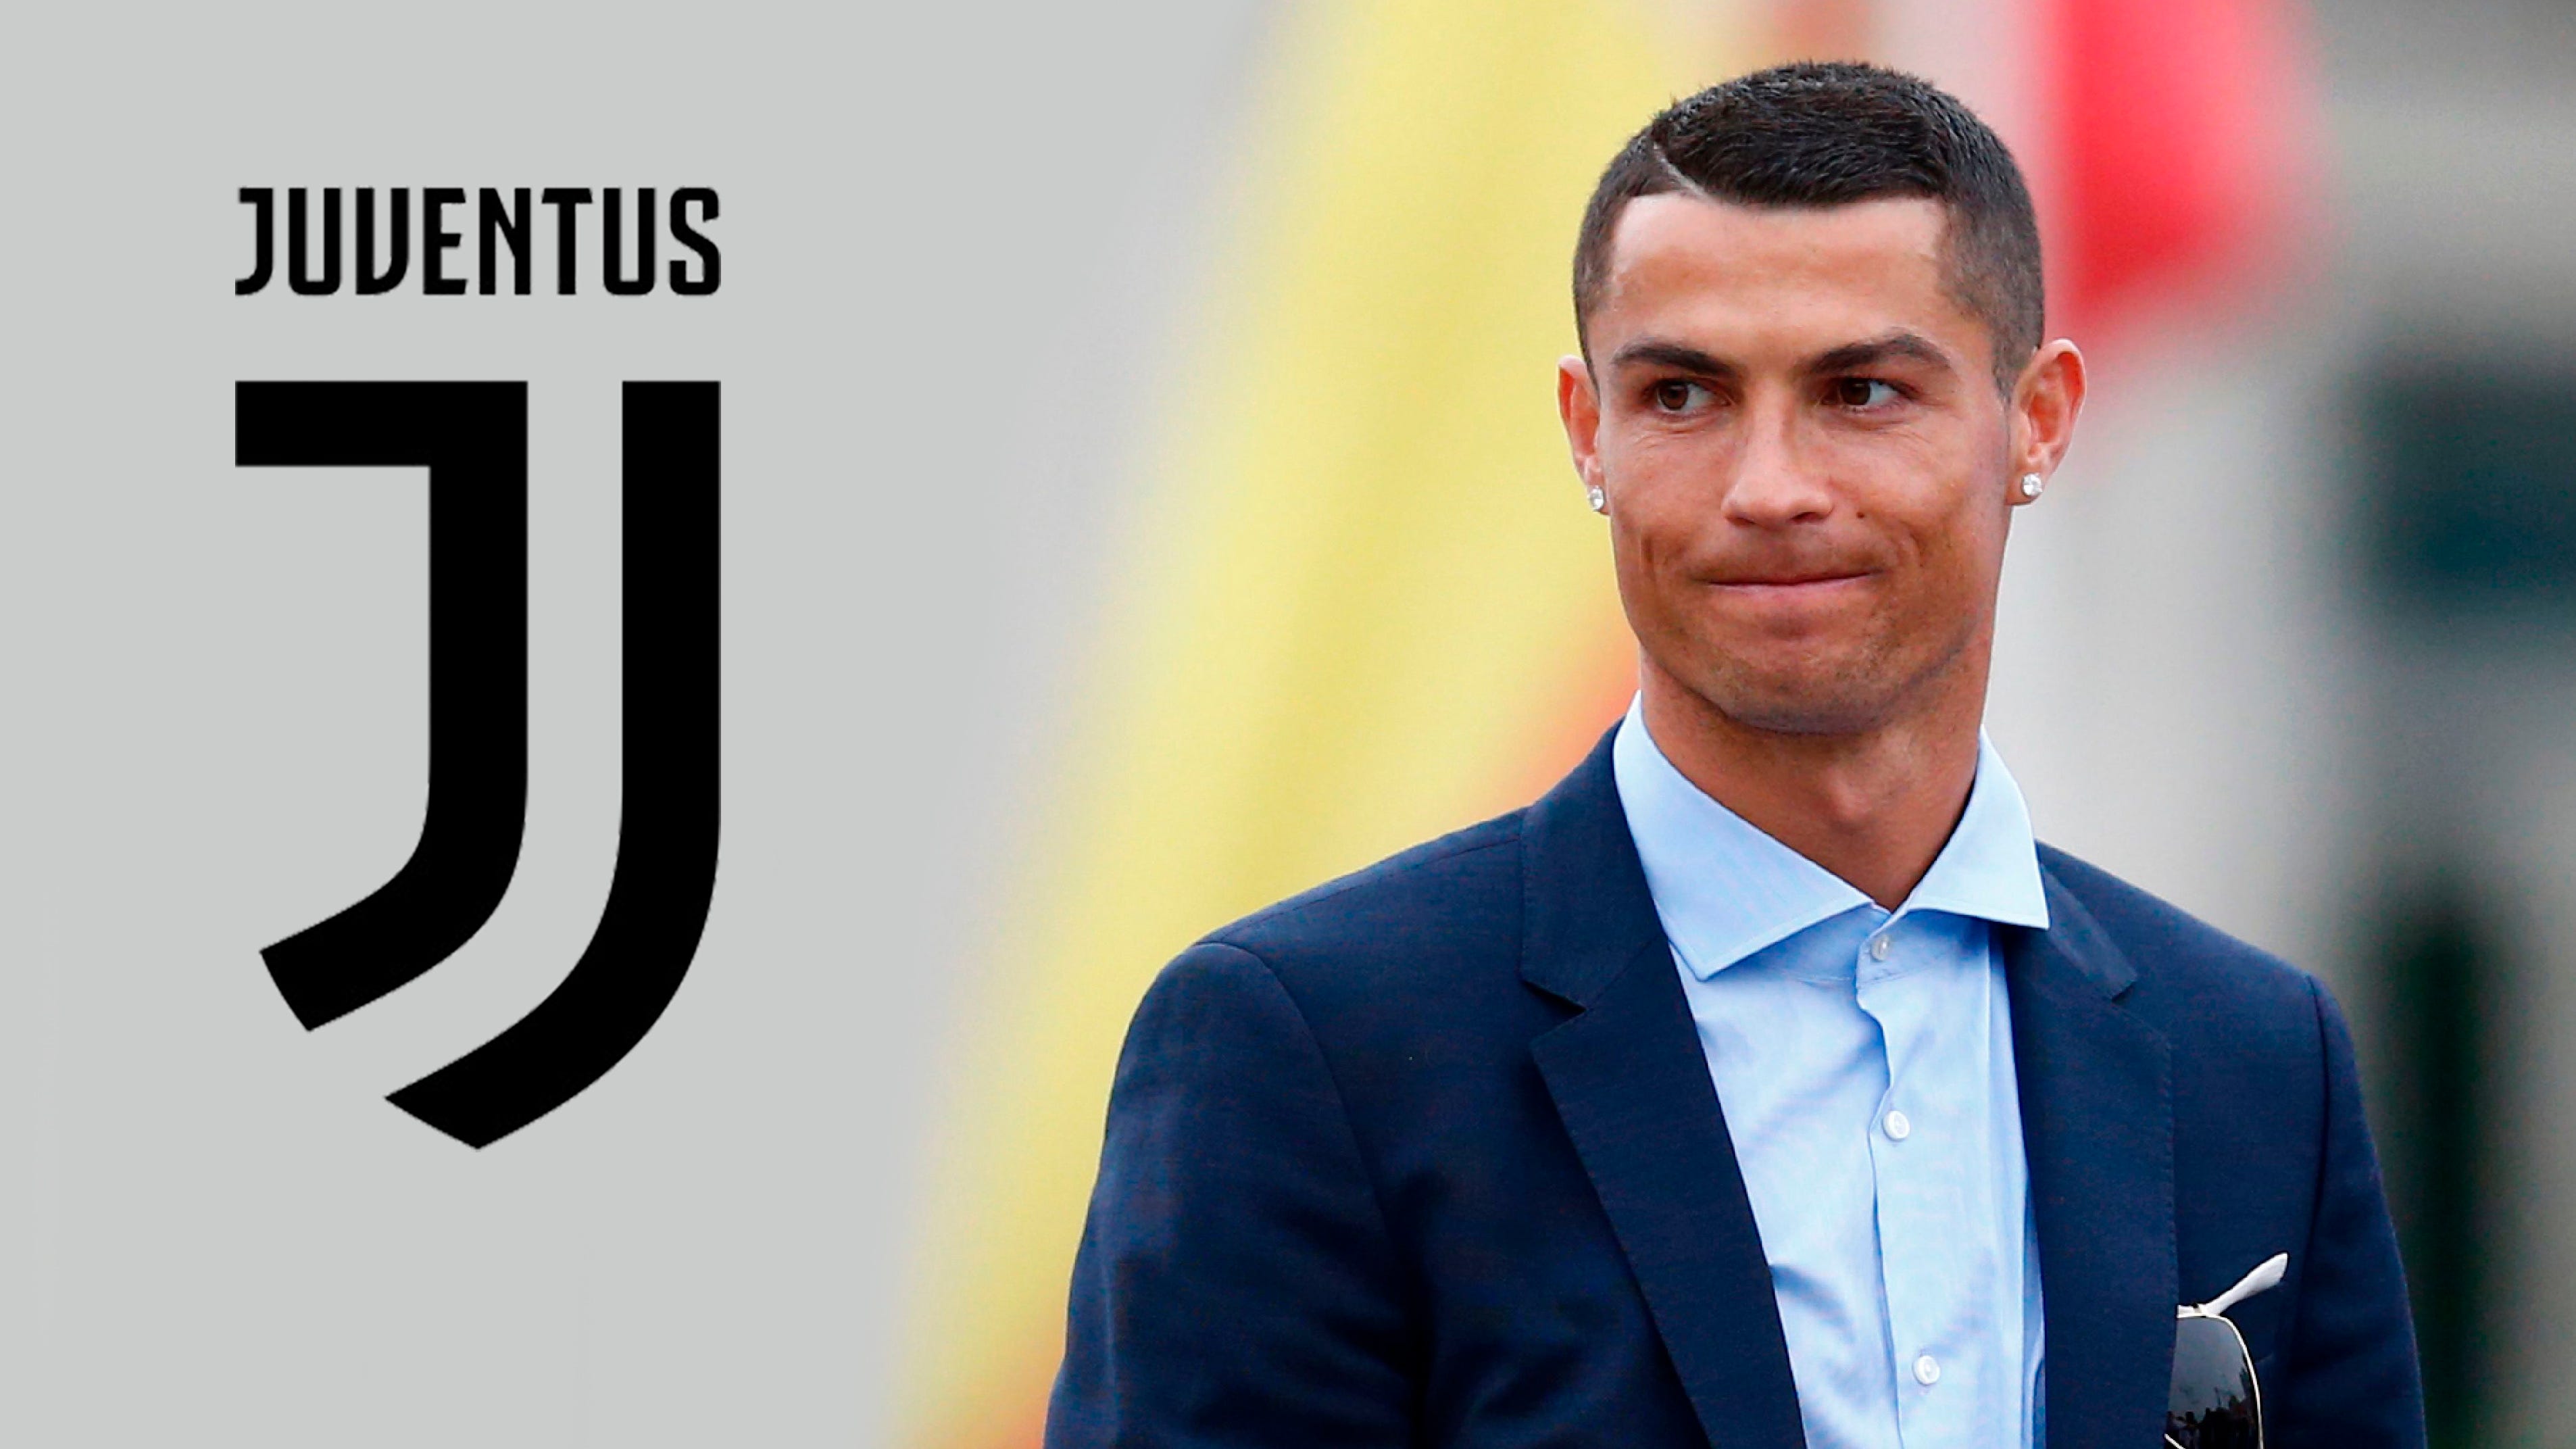 Ronaldo, Juventus, thương vụ: Ronaldo từng là cầu thủ chủ chốt của Juventus nhưng giờ đây, anh đã chuyển sang Man United. Hãy xem lại quá trình chuyển nhượng của Ronaldo và Juventus và tìm hiểu thêm về các thương vụ bóng đá đầy kịch tính.